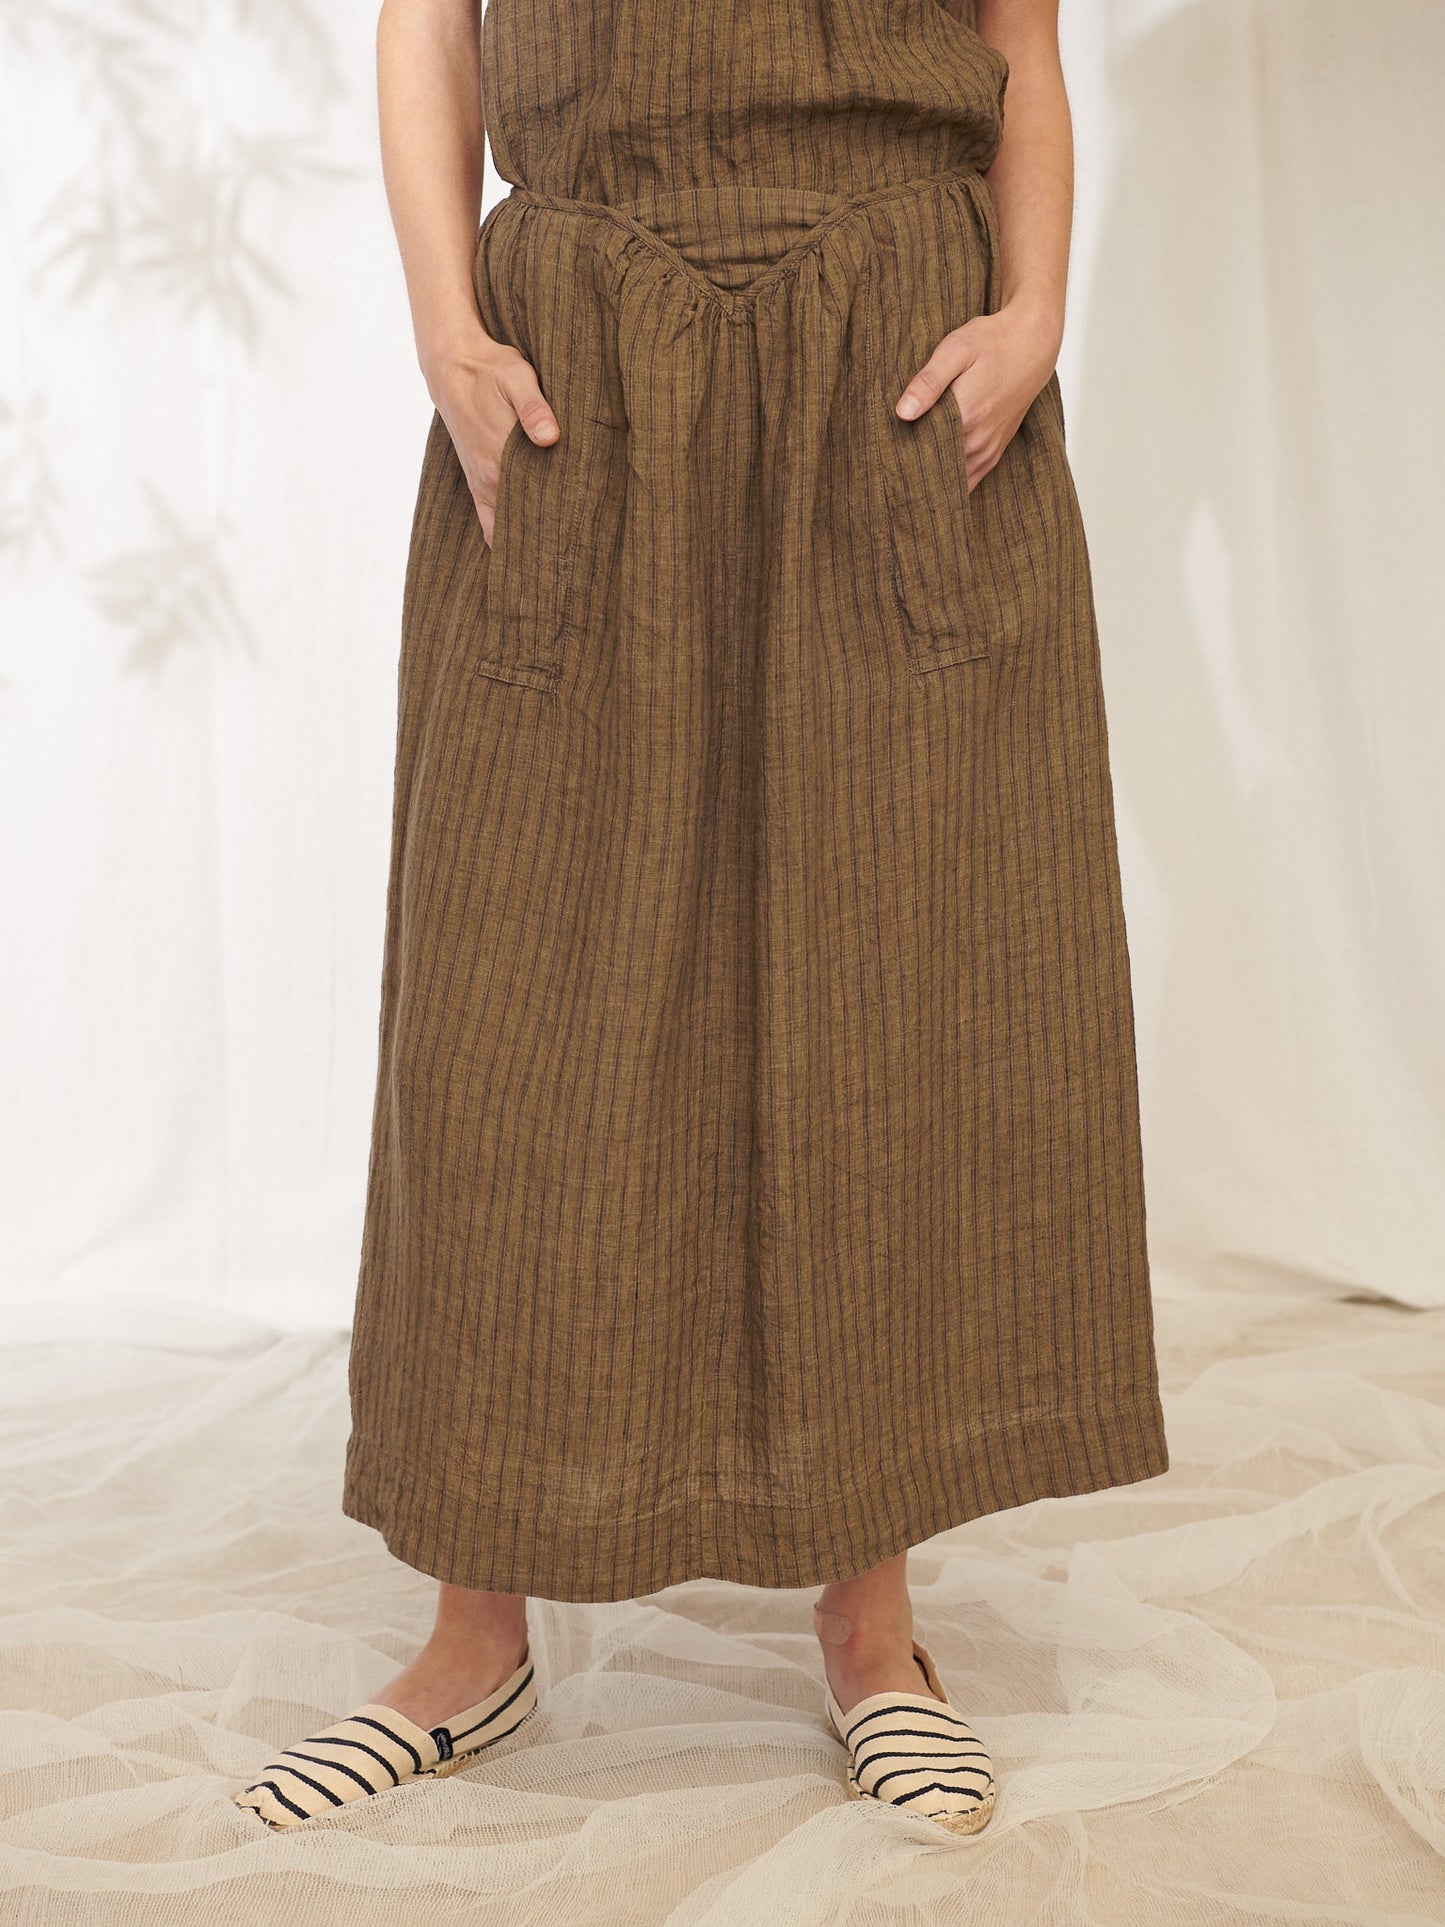 Manteau Noir ~ Clementine Ticking Stripe Linen Skirt